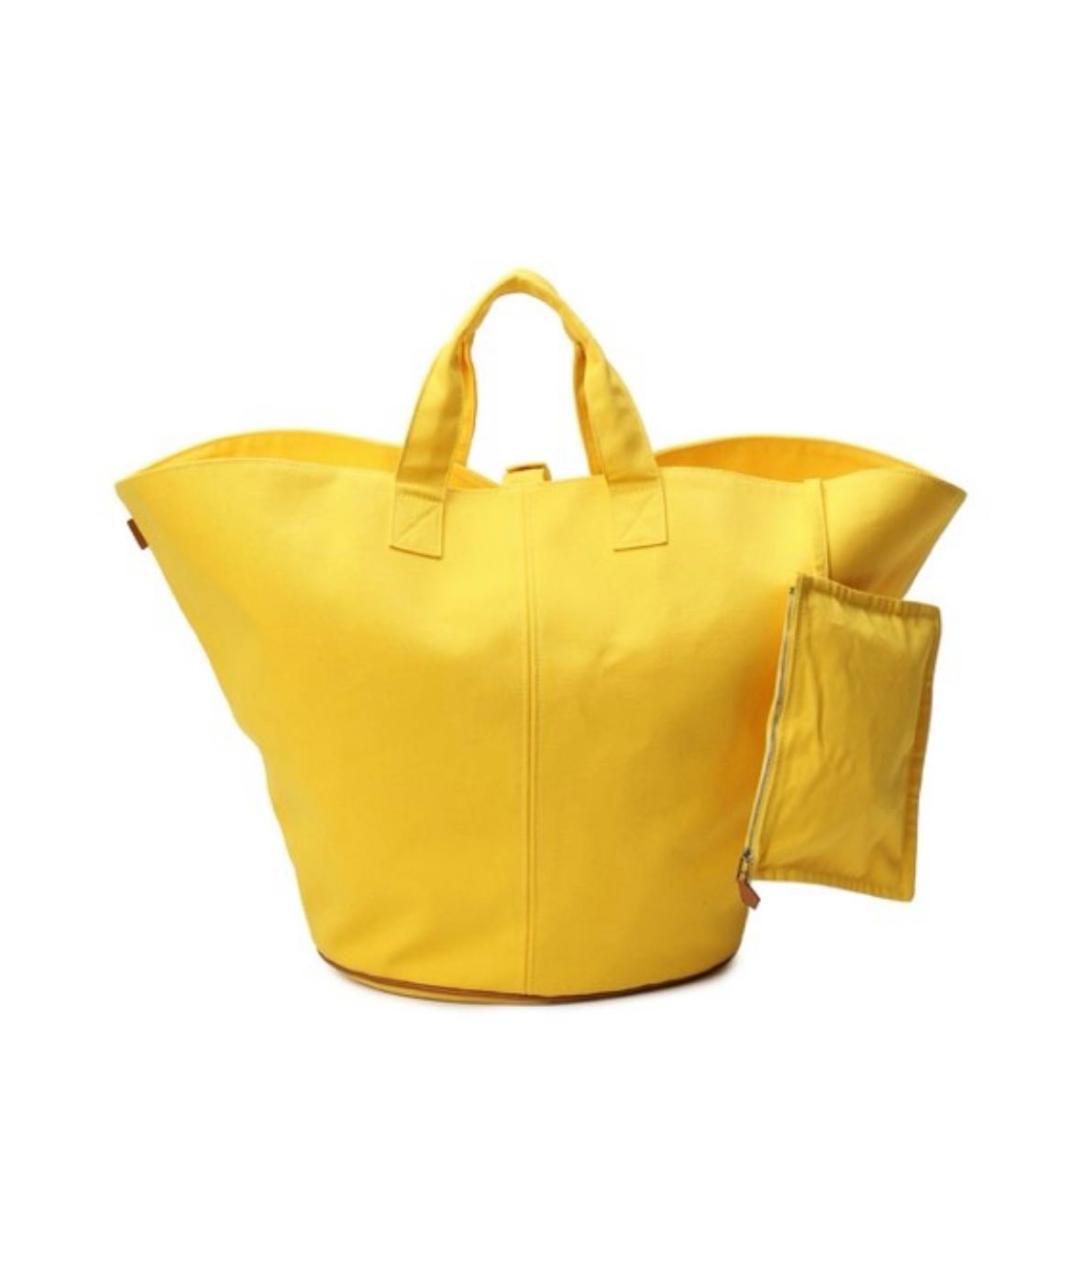 HERMES Желтая пляжная сумка, фото 1